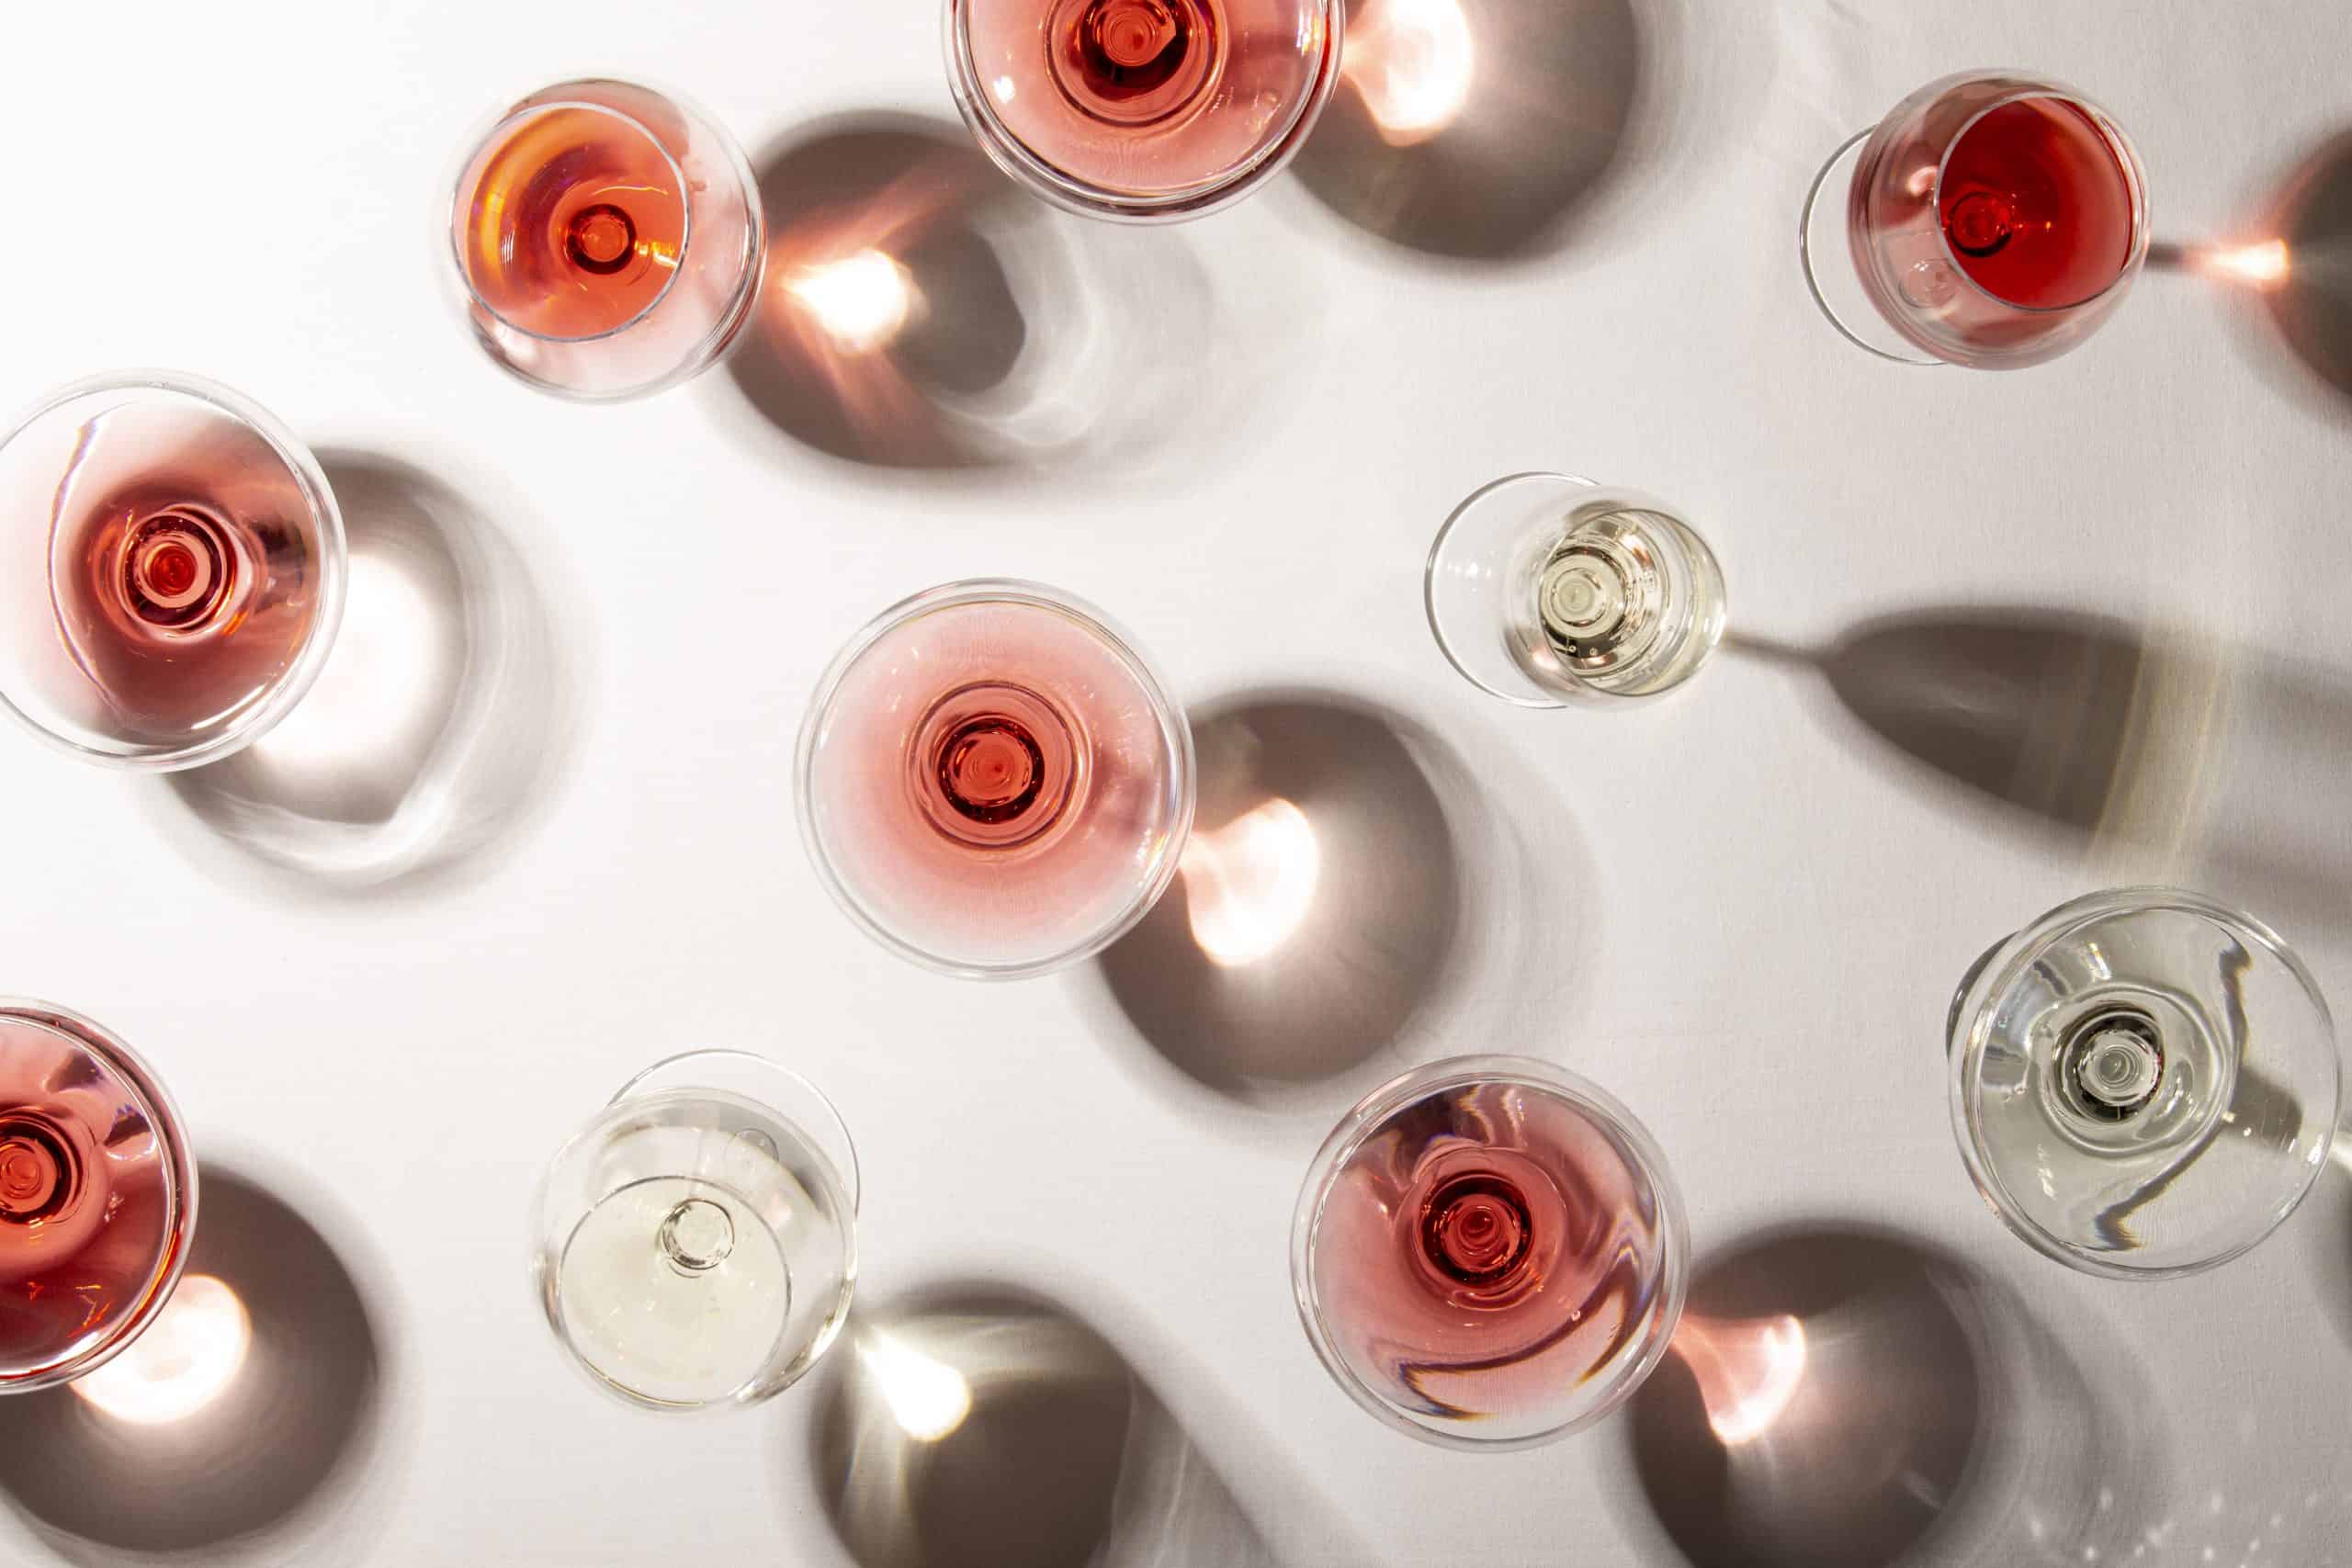 La guerra dei rosé: Provenza contro Bordeaux. Ma per i produttori è solo un'invenzione della stampa inglese